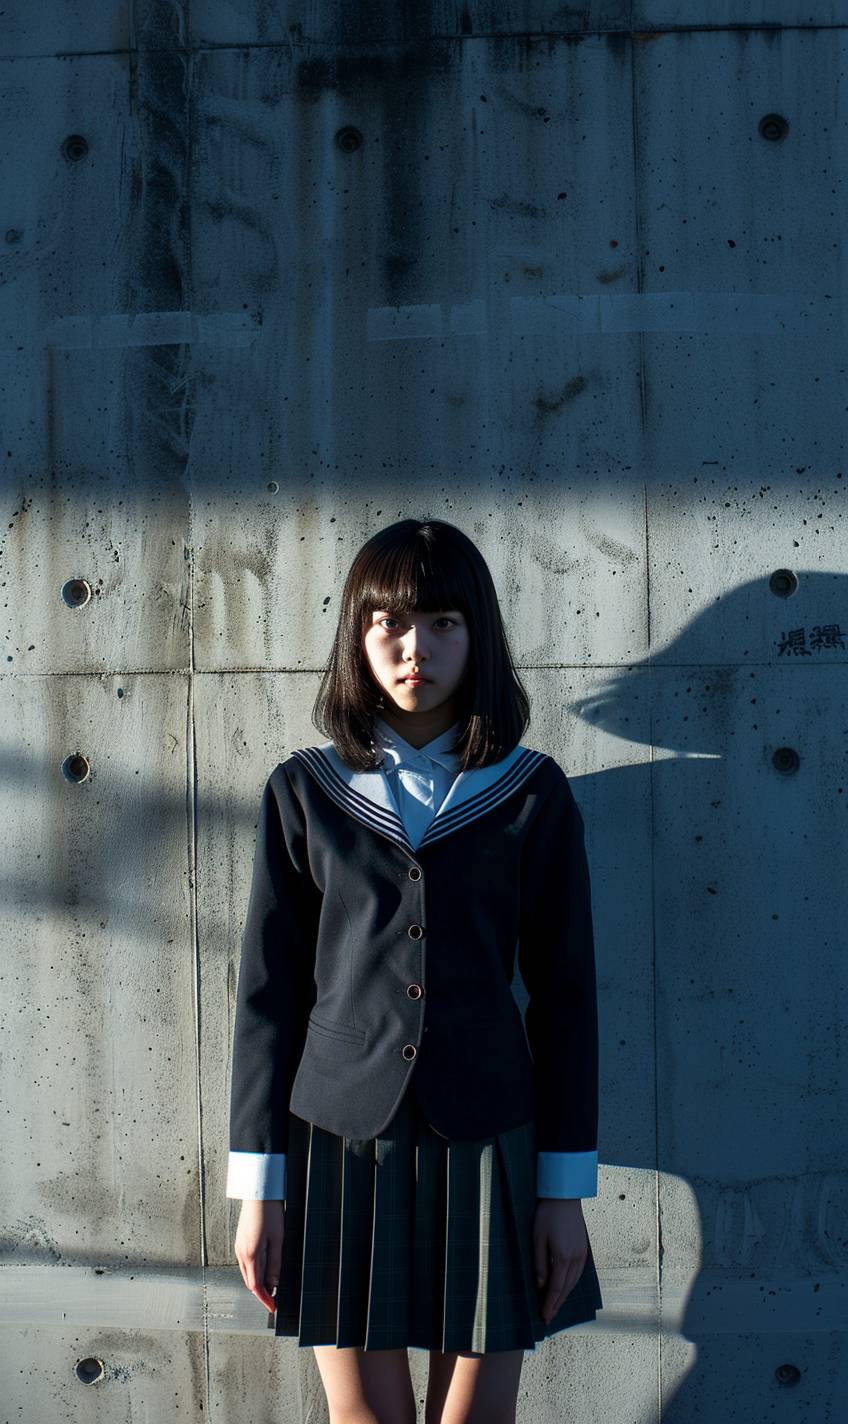 日本の女子学生服を着た若い女性がコンクリートの壁に立っている、自信に溢れた姿勢を見せています。彼女の影が壁に映し出され、劇的な効果を高めています。背景にはテクスチャのあるコンクリートの壁と清潔な都市環境があり、イメージの大胆さと力強さを引き立たせています。